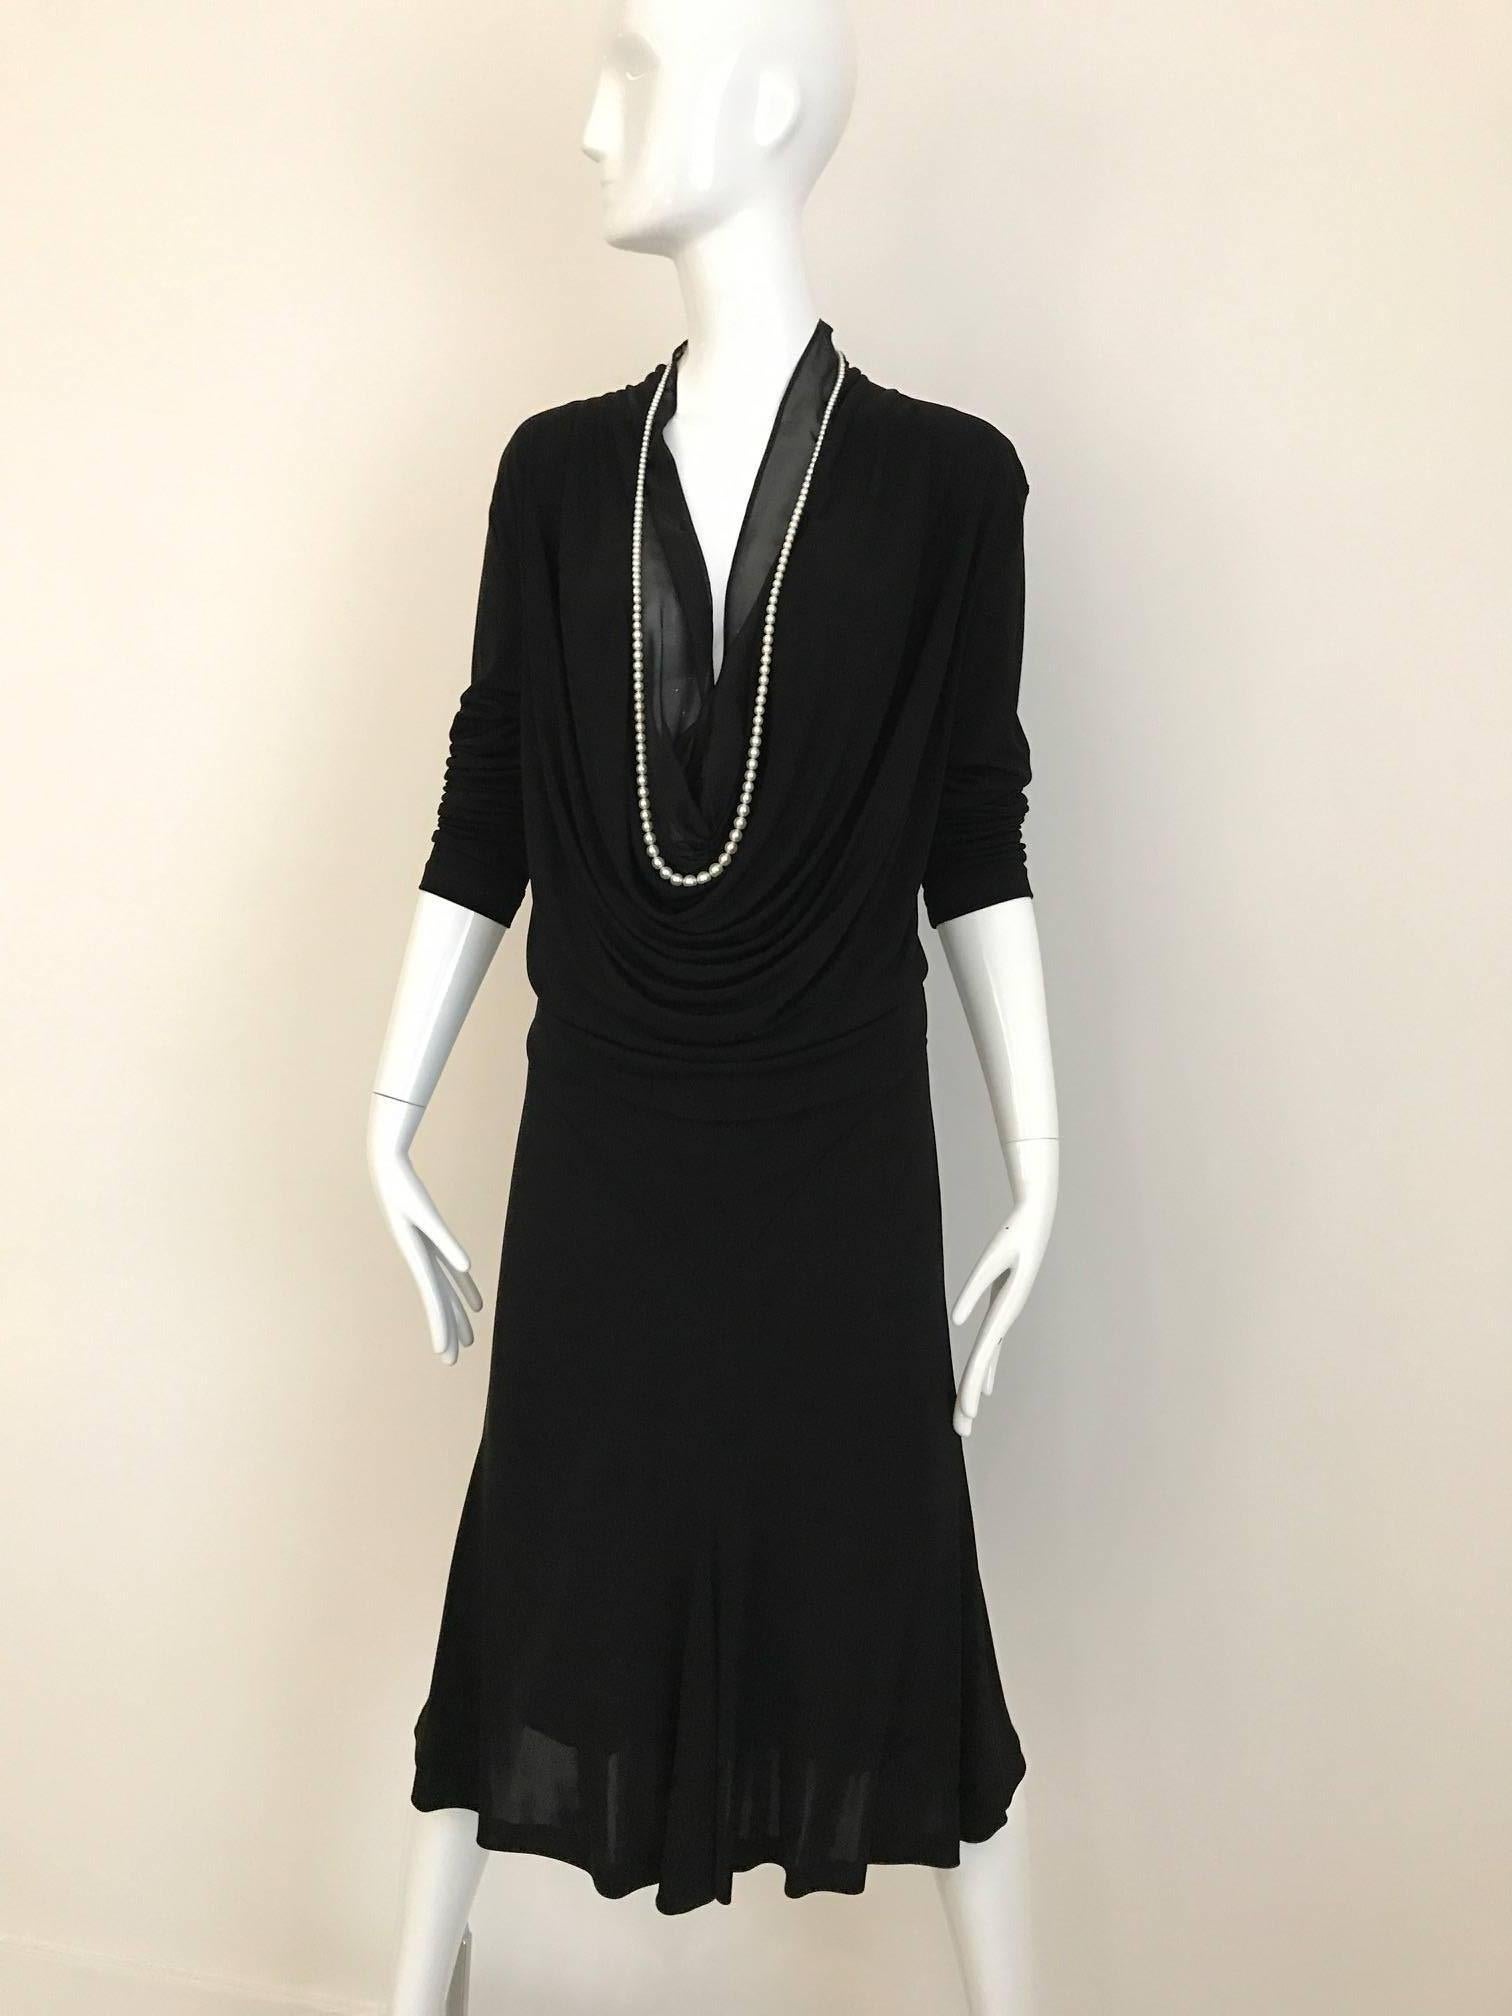 robe à décolleté plongeant en jersey noir Jean Paul Gaultier des années 1990 avec collier de perles. La robe est doublée d'une mousseline de soie transparente au niveau du buste (pour une couverture modeste) 
Poitrine 42 (style blousy) Taille : 32